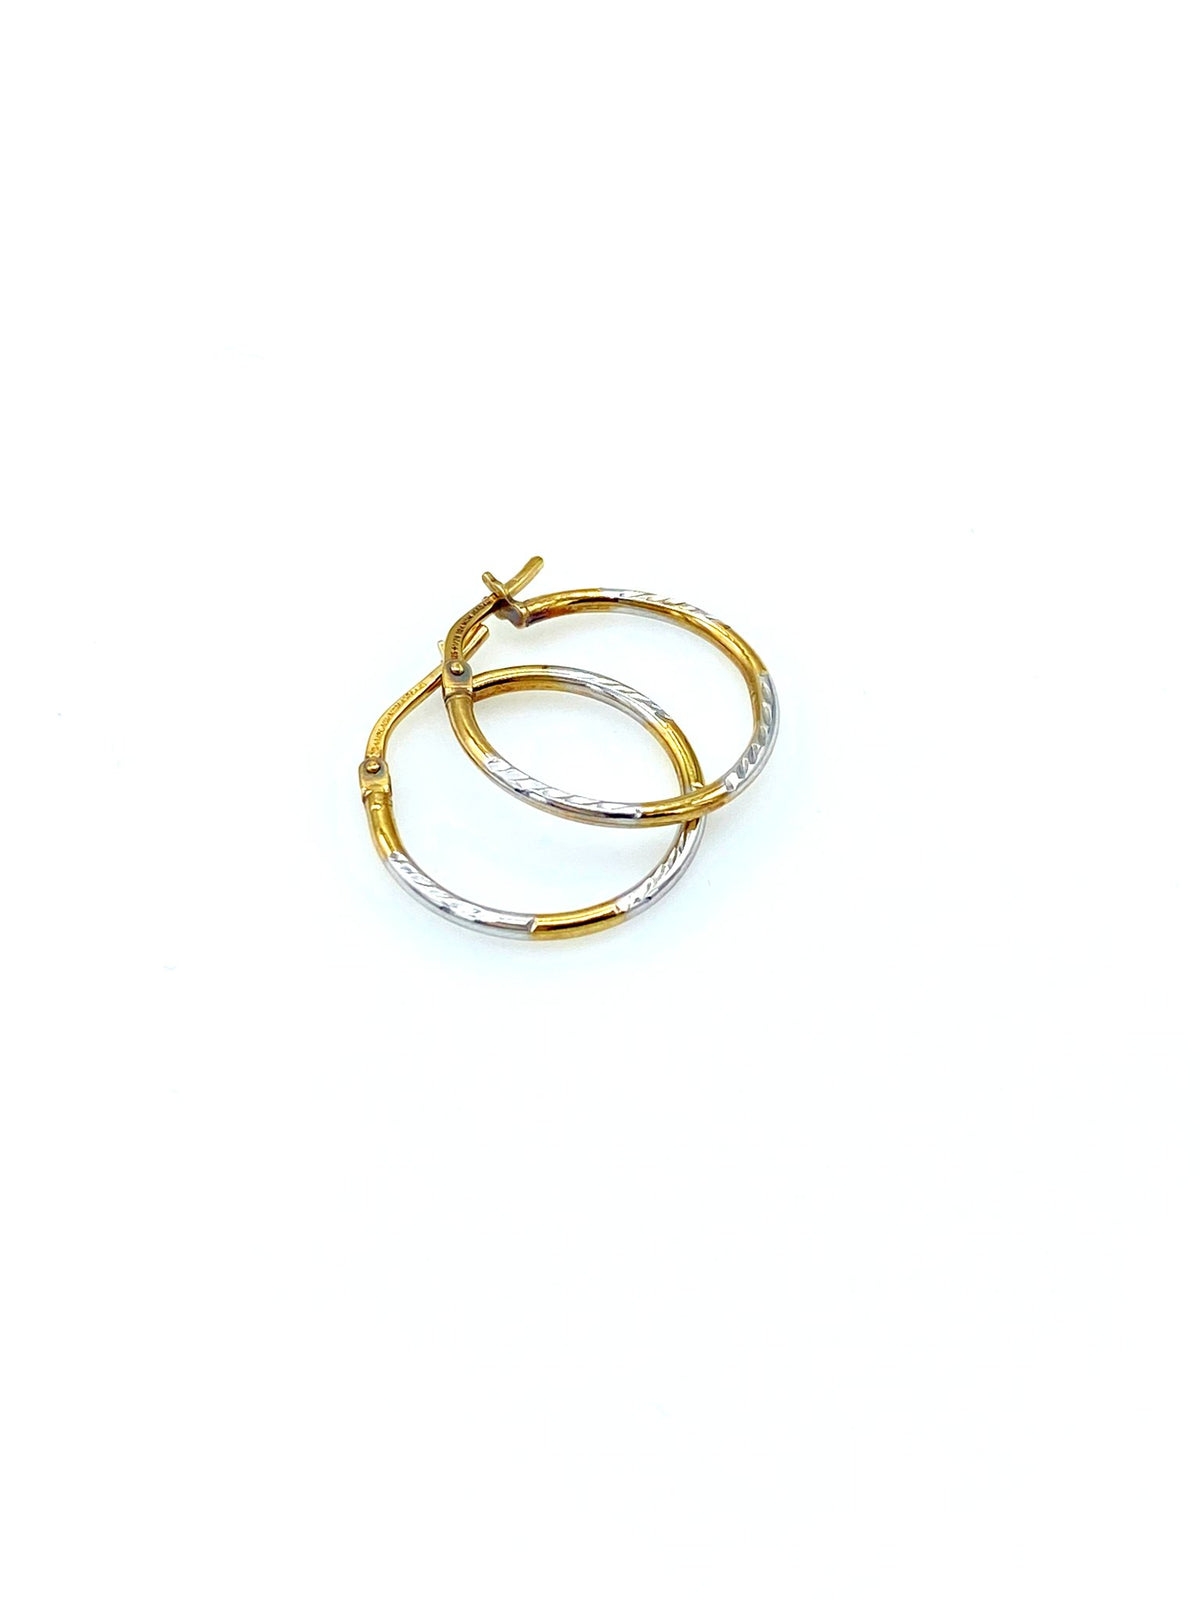 Petite Gold & Silver Vintage Hoop Pierced Earrings - 24 Wishes Vintage Jewelry